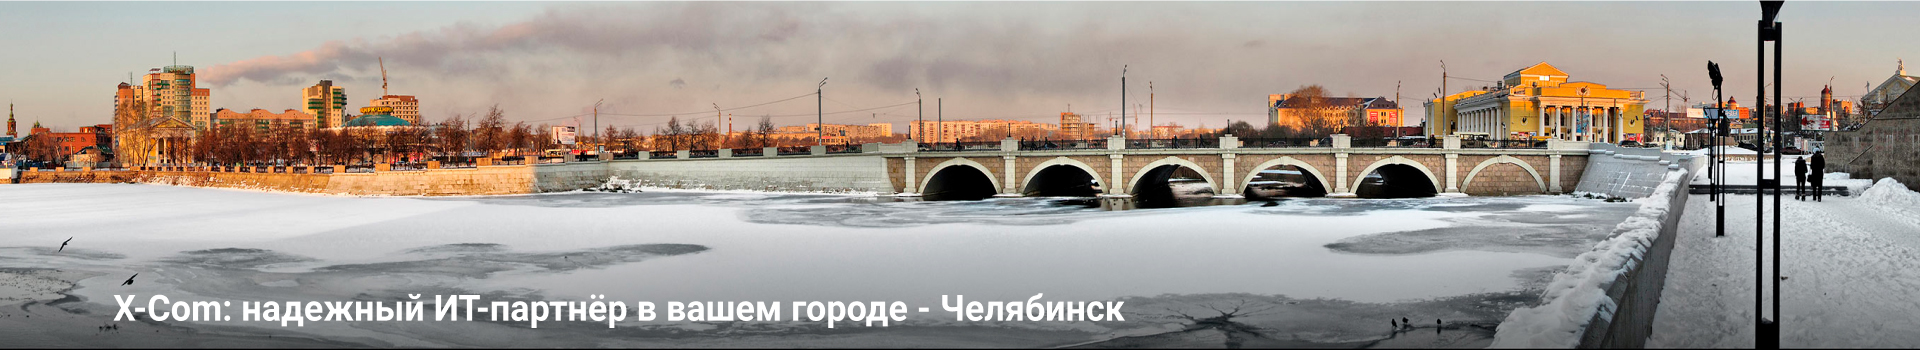 X-Com: надежный ИТ-партнёр в вашем городе - Челябинск